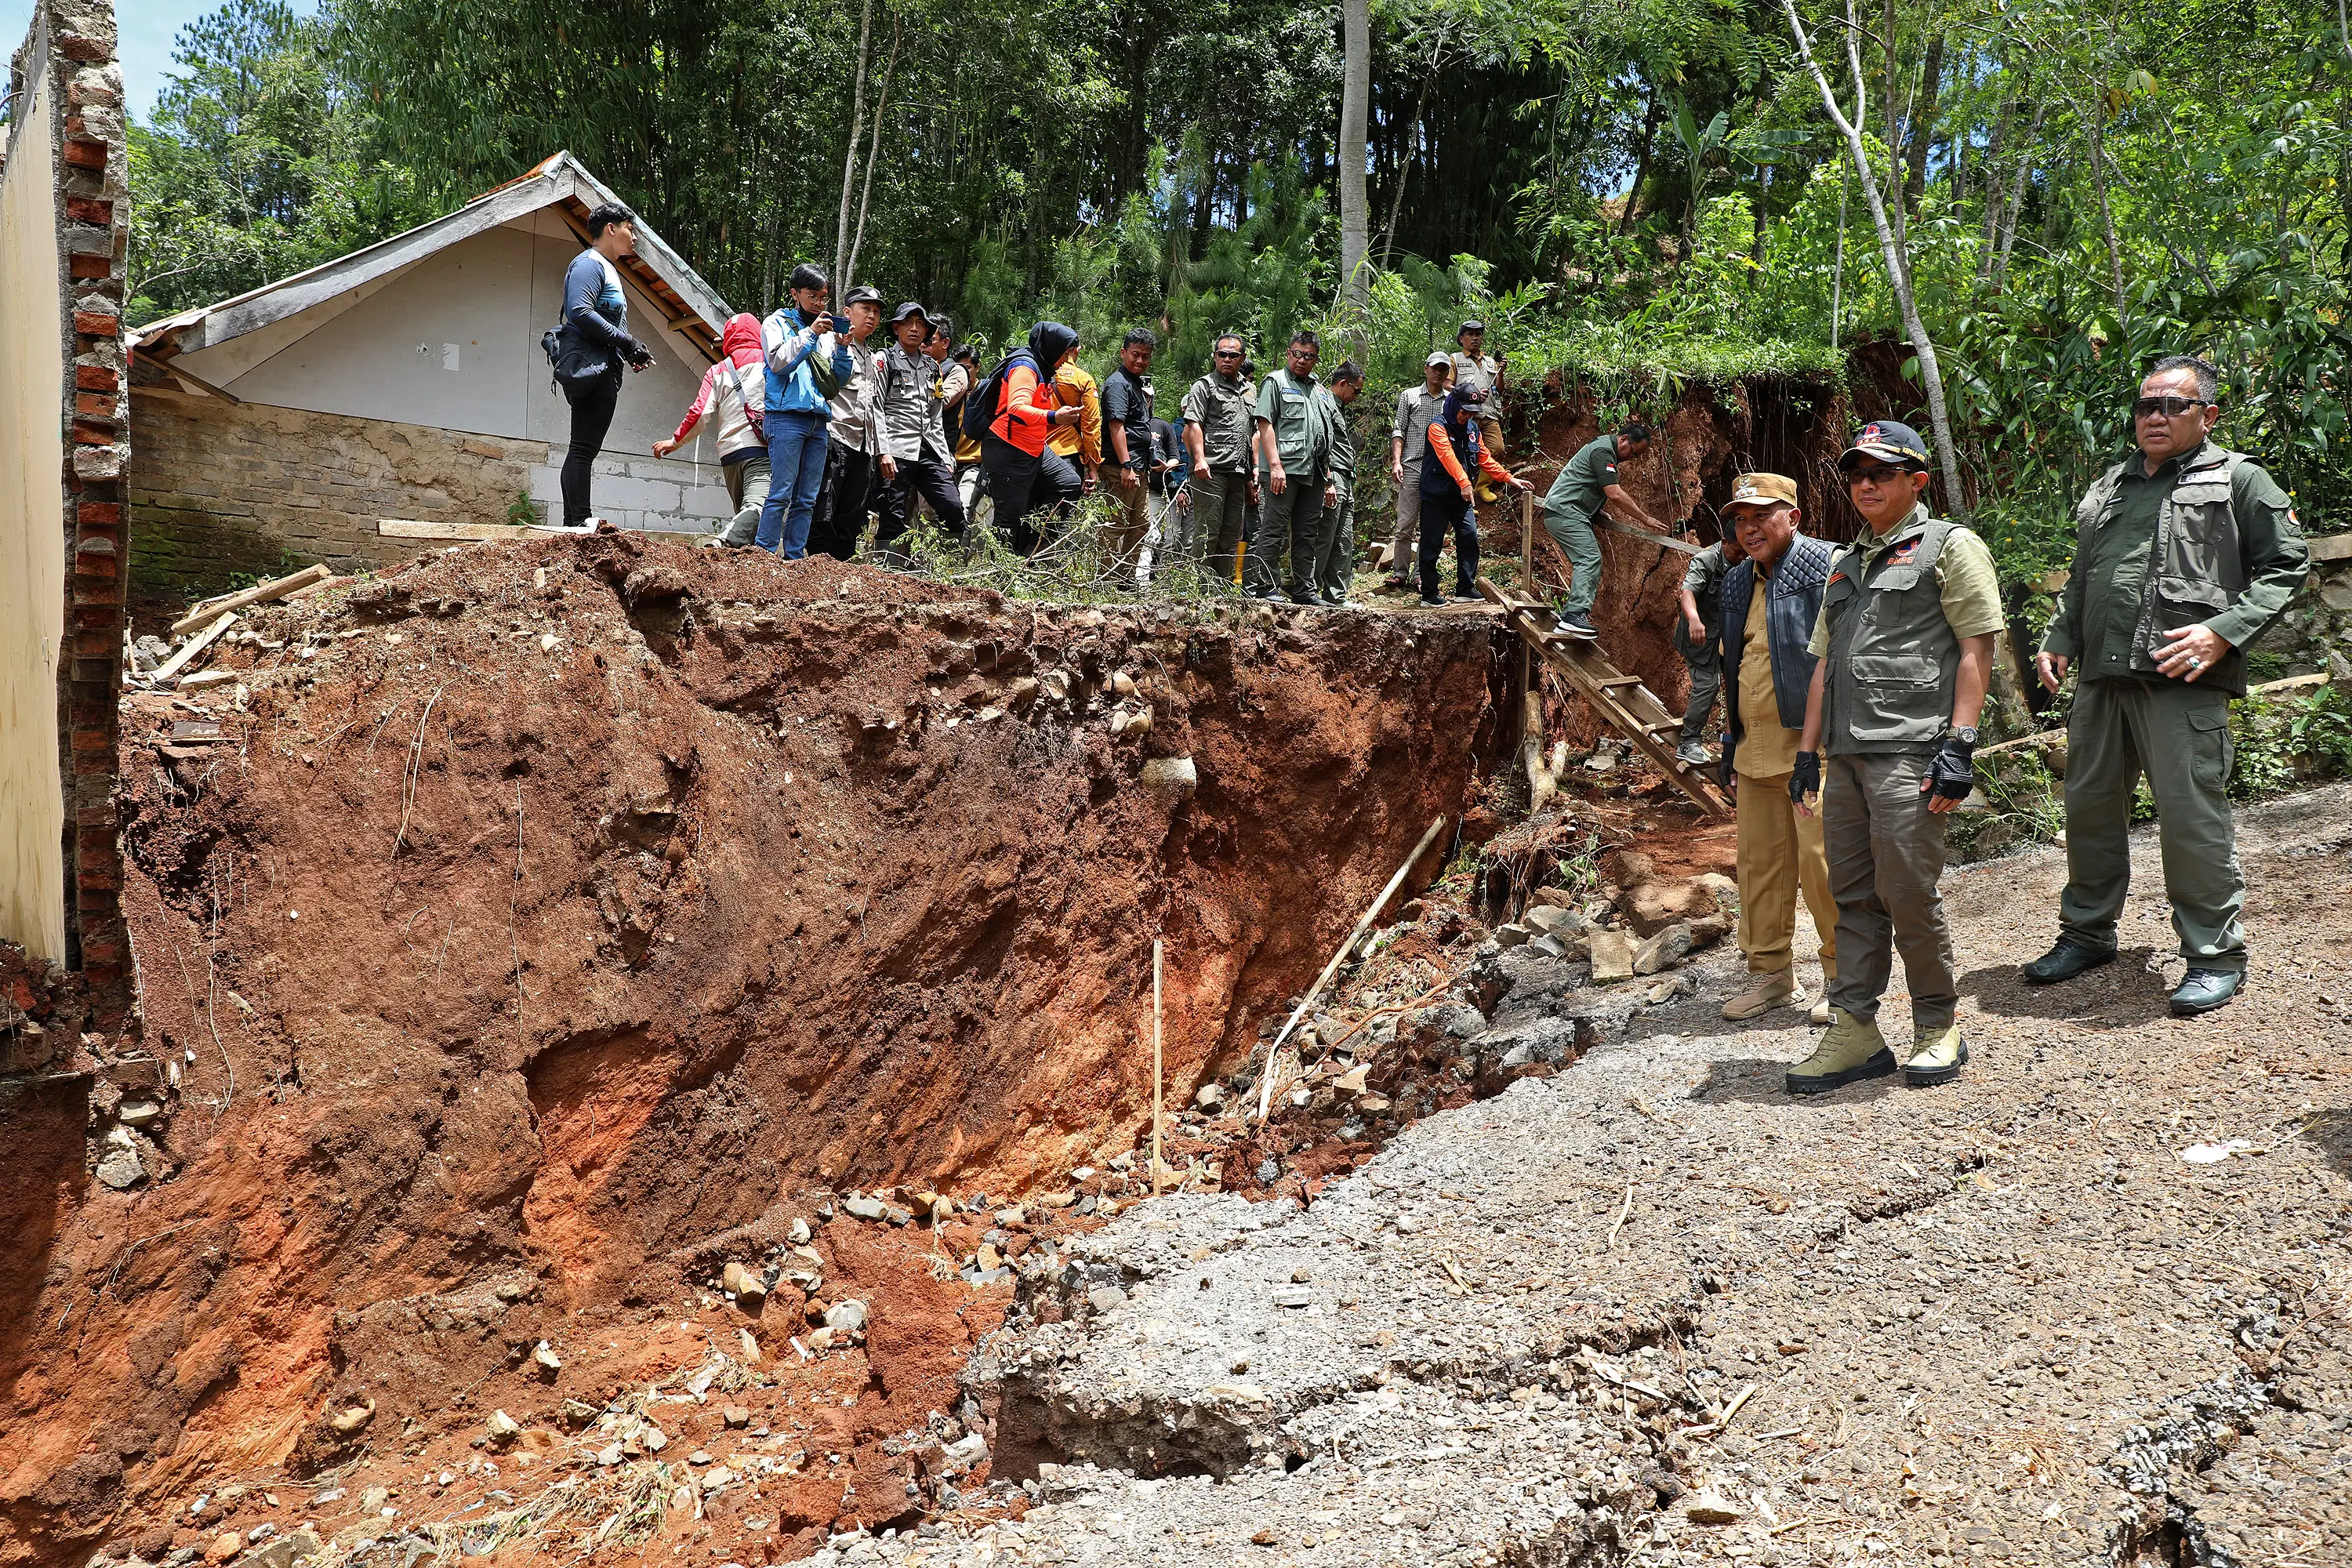 Fenomena Pergerakan Tanah di Bandung Barat, Pemerintah Akan Merelokasi Rumah Warga